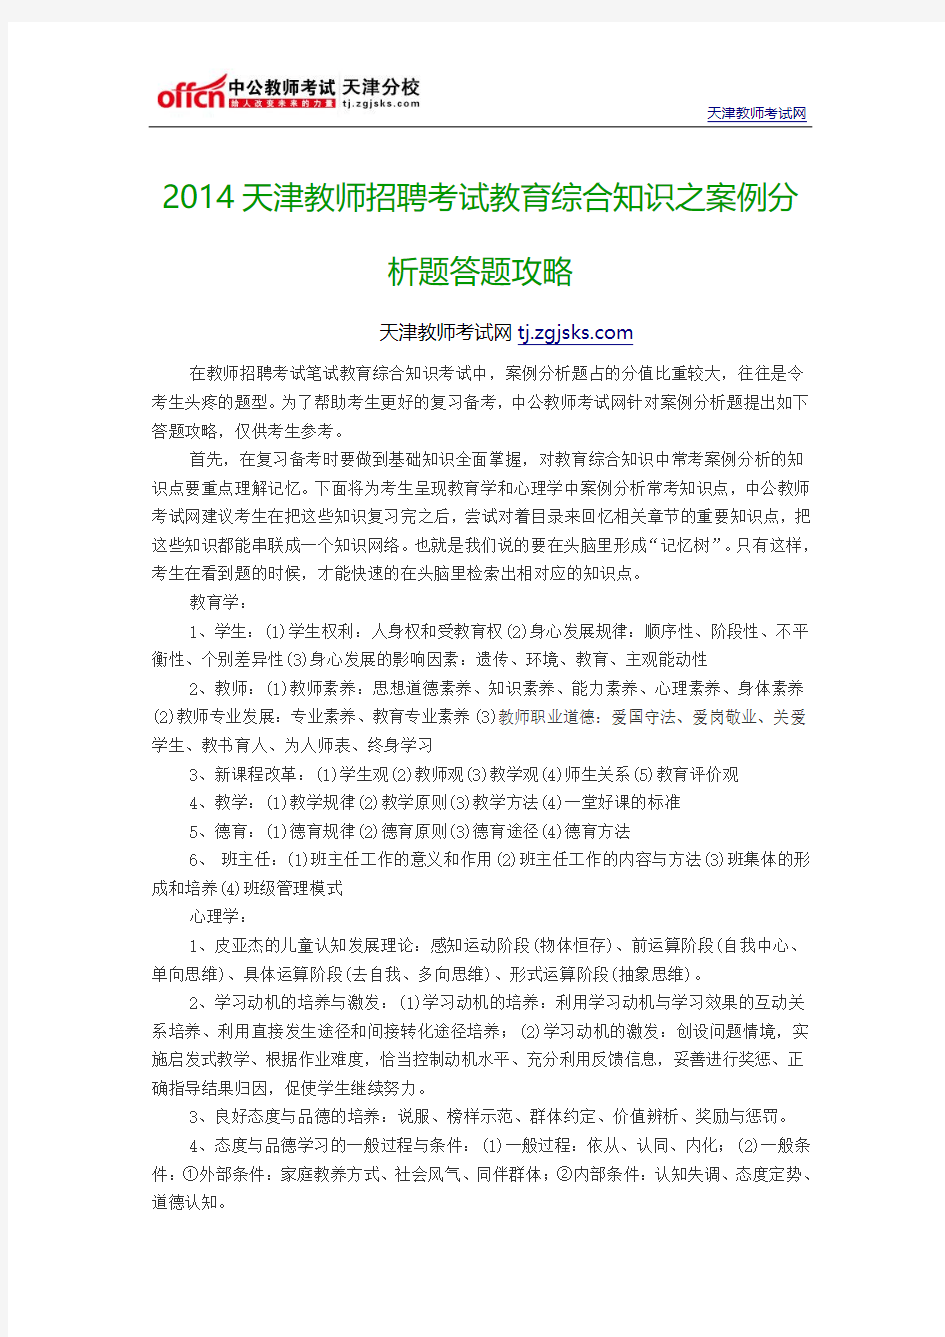 2014天津教师招聘考试教育综合知识之案例分析题答题攻略